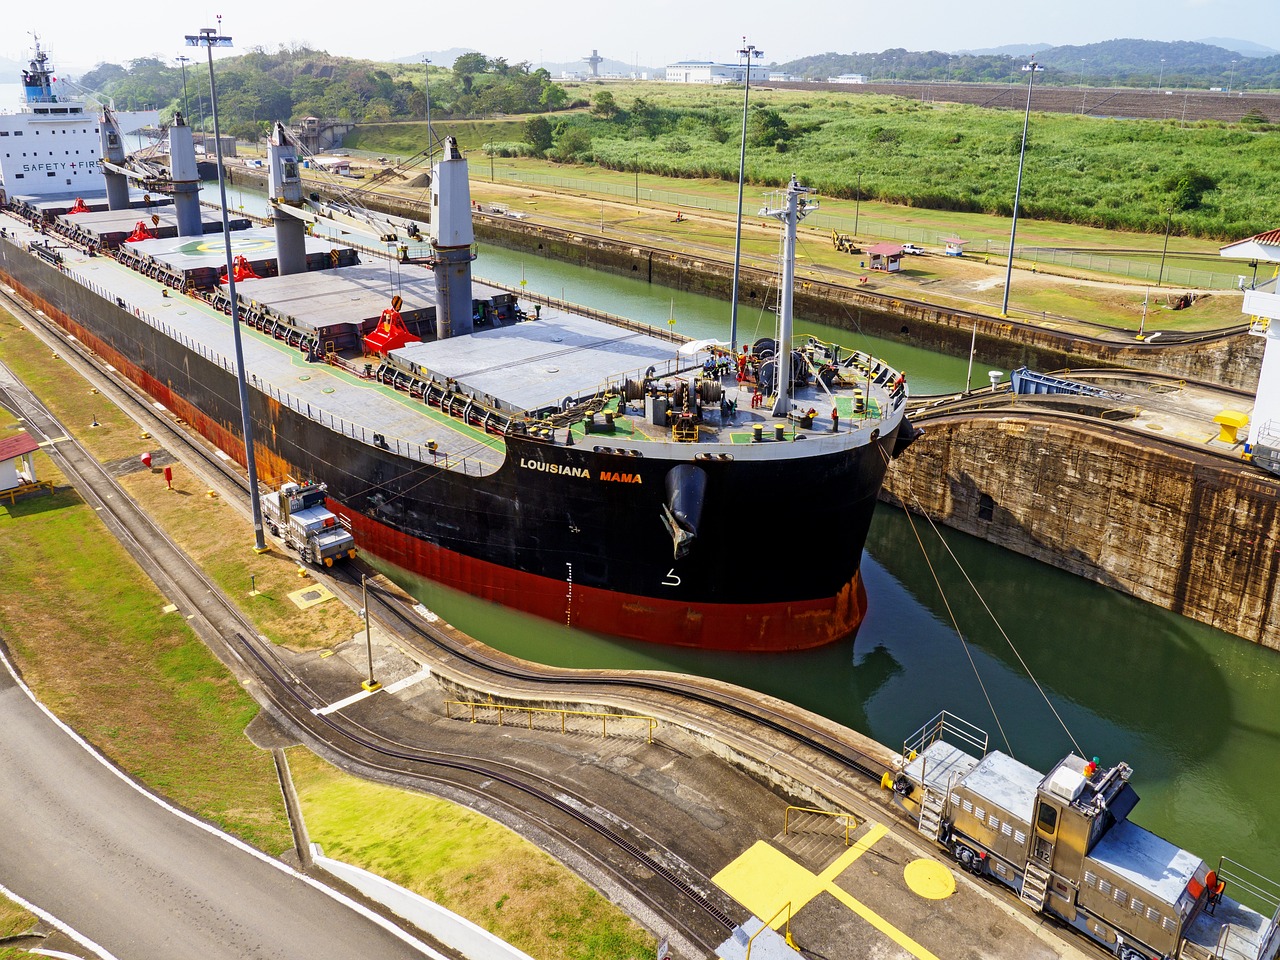 Panamski kanal gubi 100 mil. dolara mesečno zbog suše